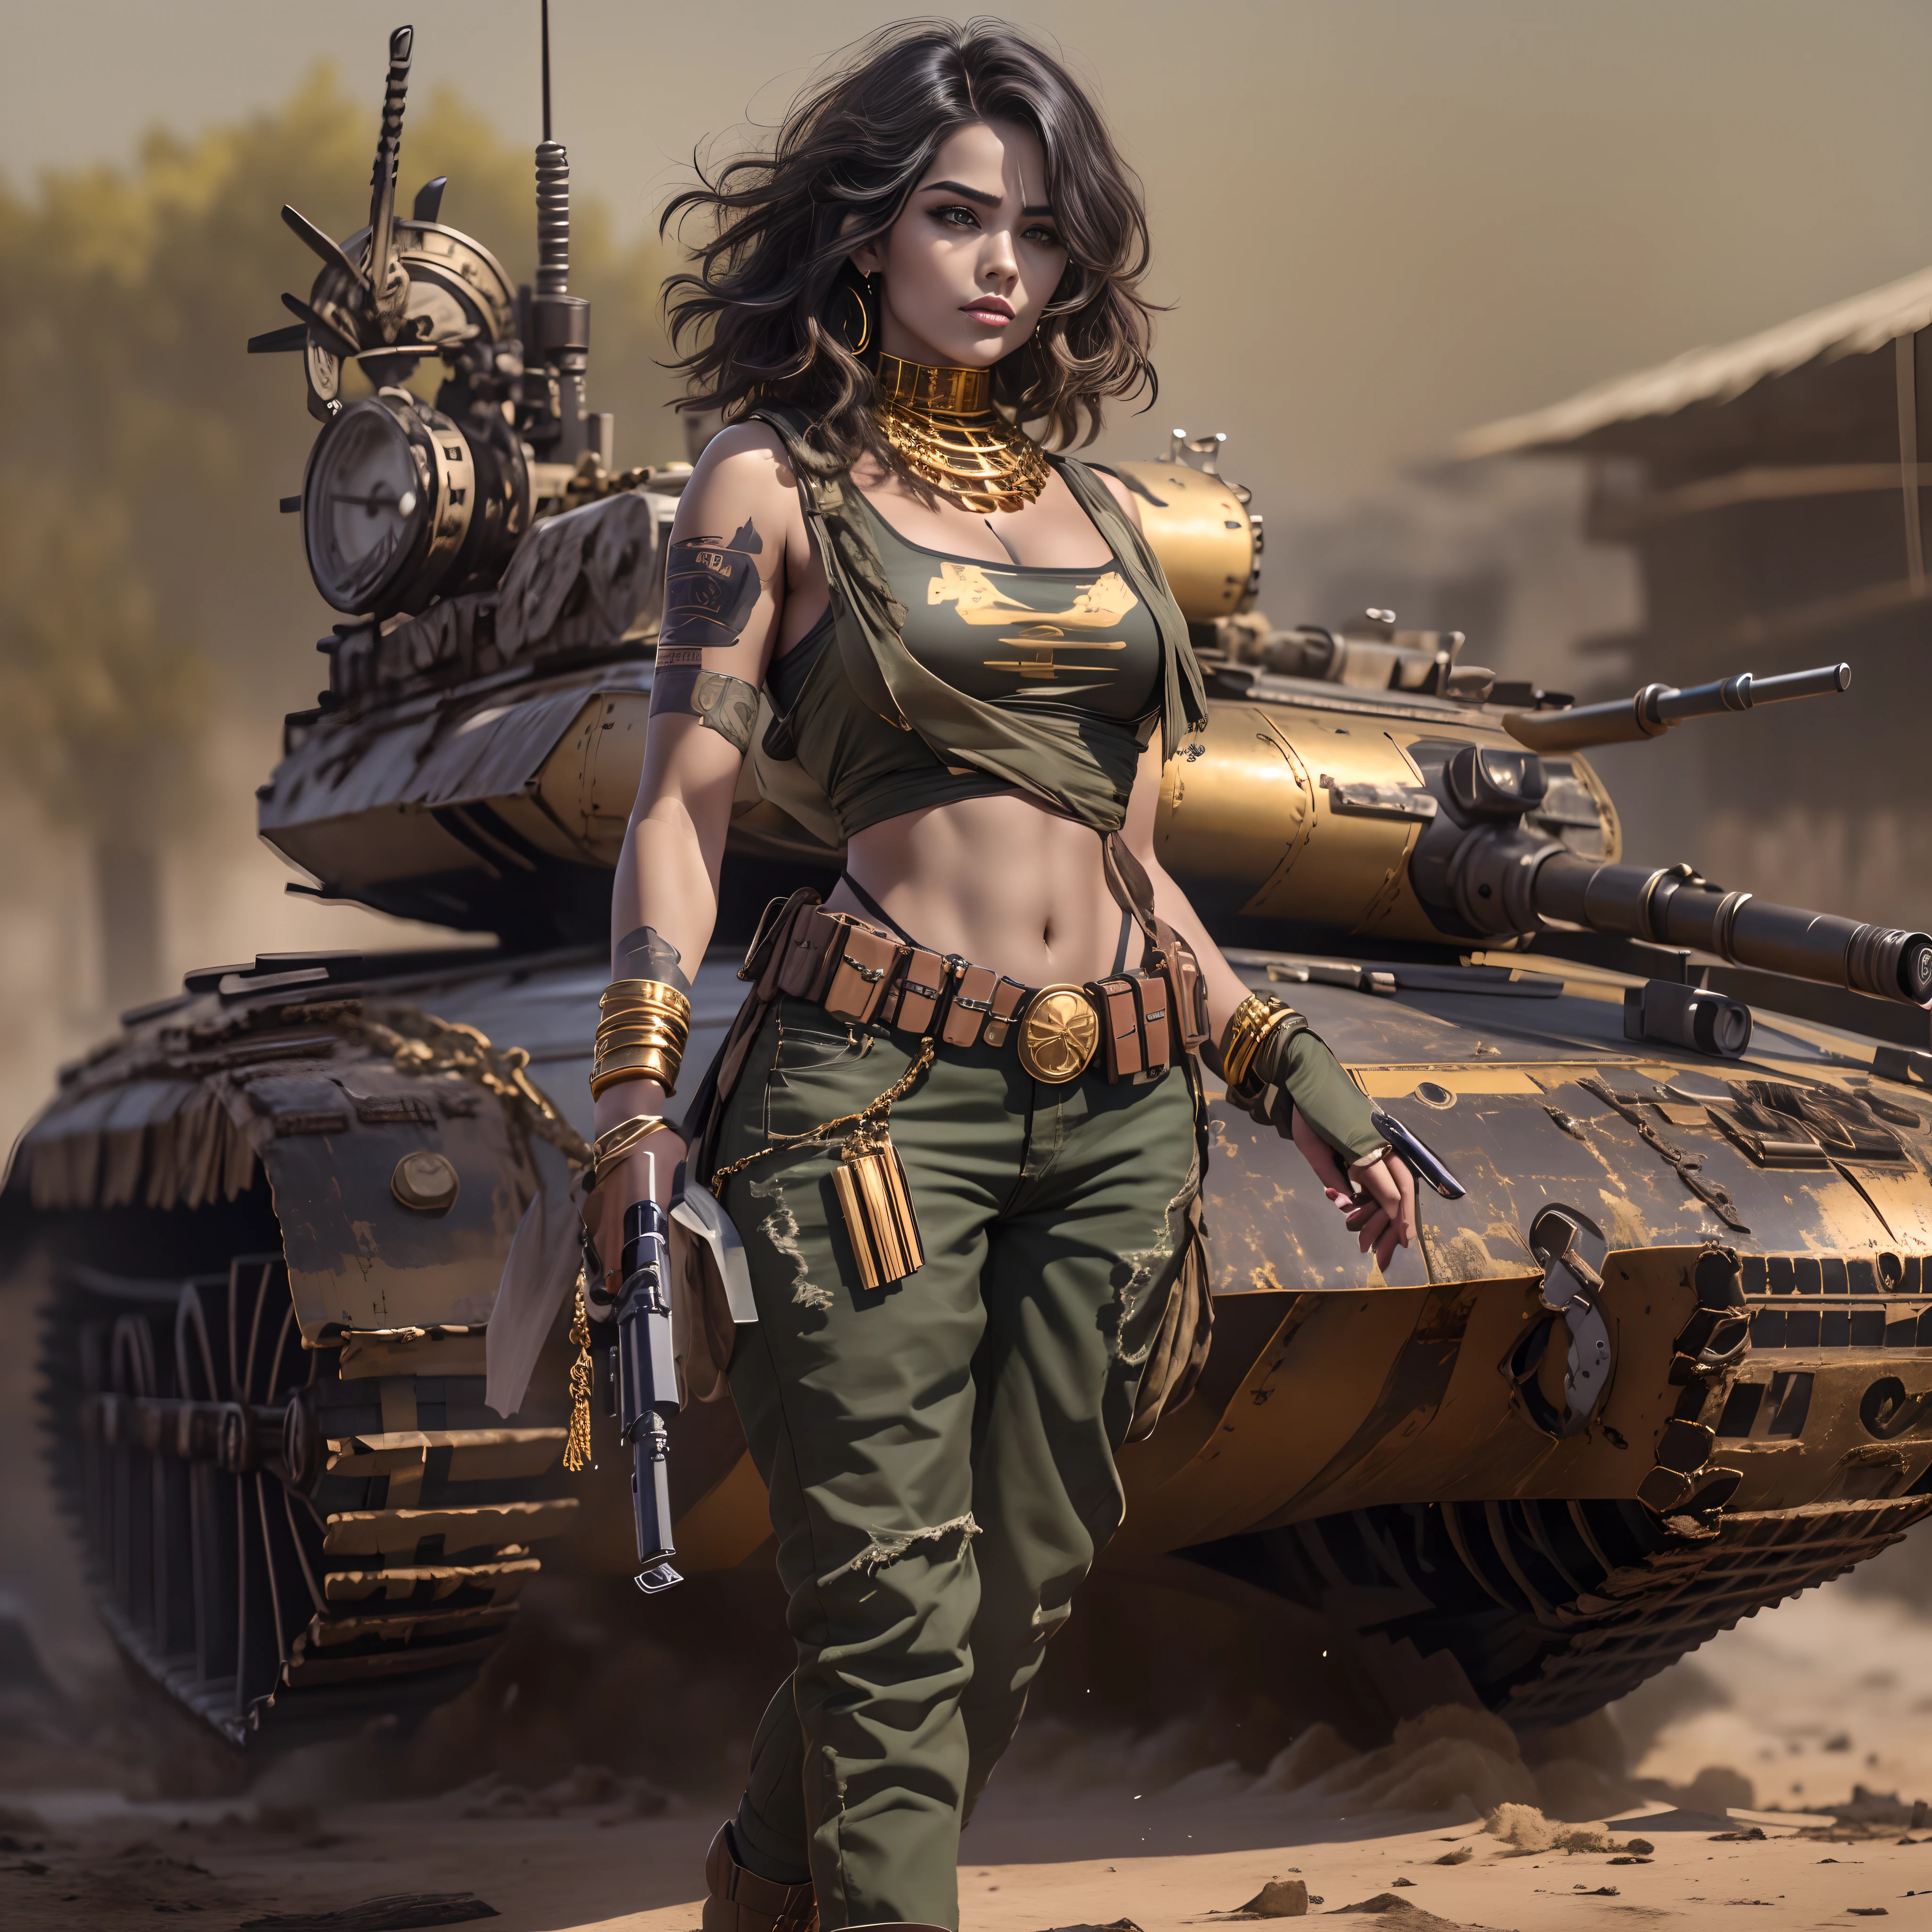 Erzeugen Sie ein Bild der Figur Mara, auch bekannt als „Mara Death Dealer“, aus dem Spiel Call of Duty: Moderner Krieg: Ganzkörper, grausame Physiognomie, ((Neu)) große Ohrringe, Halskette-Armband, Ringe, goldene Uhr, am Strand, Sonnenuntergang, Palmen, skulpturaler Körper, wallende Haare, ((Maschinengewehre, Waffen, Gewehr , Granaten, goldene Accessoires)) stehend auf einem ((Russischer Kampfpanzer T-14 Armata))